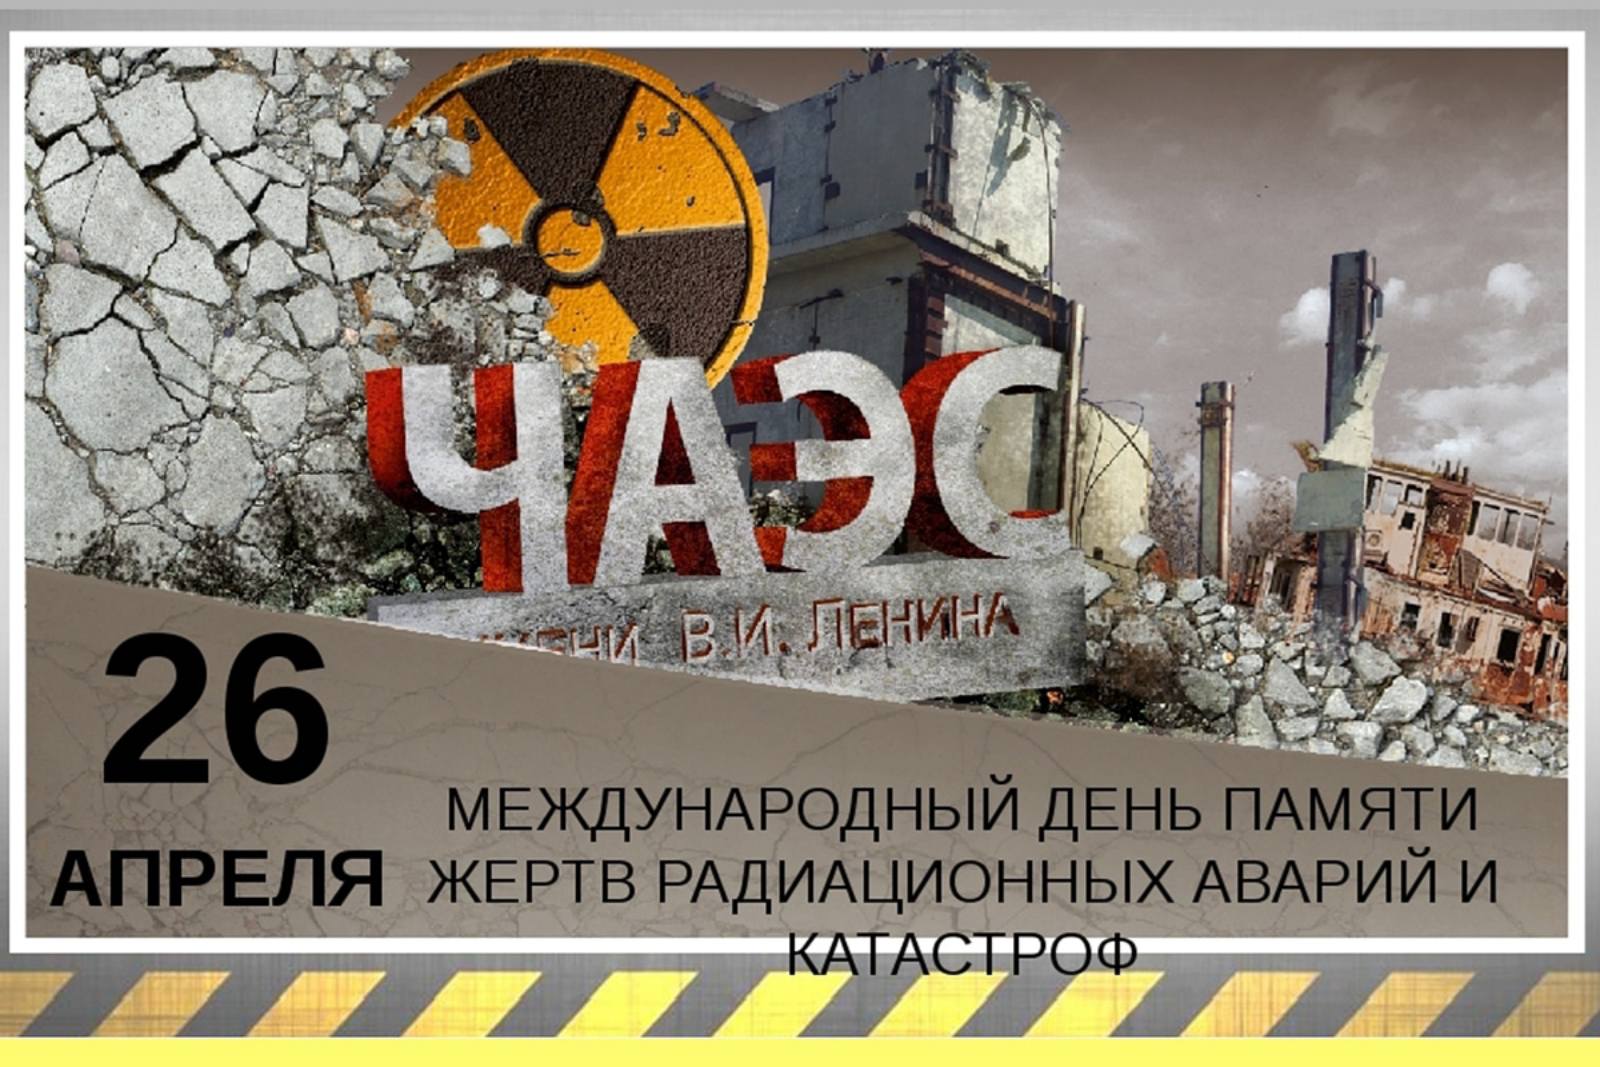 Дом 26 апреля. Международный день памяти о Чернобыльской аварии-26 апреля. День памяти ликвидации аварии на ЧАЭС (Чернобыль). 26 Апреля 1986 день памяти погибших в радиационных авариях и катастрофах. 26 Апреля Международный день памяти о Чернобыльской катастрофе.